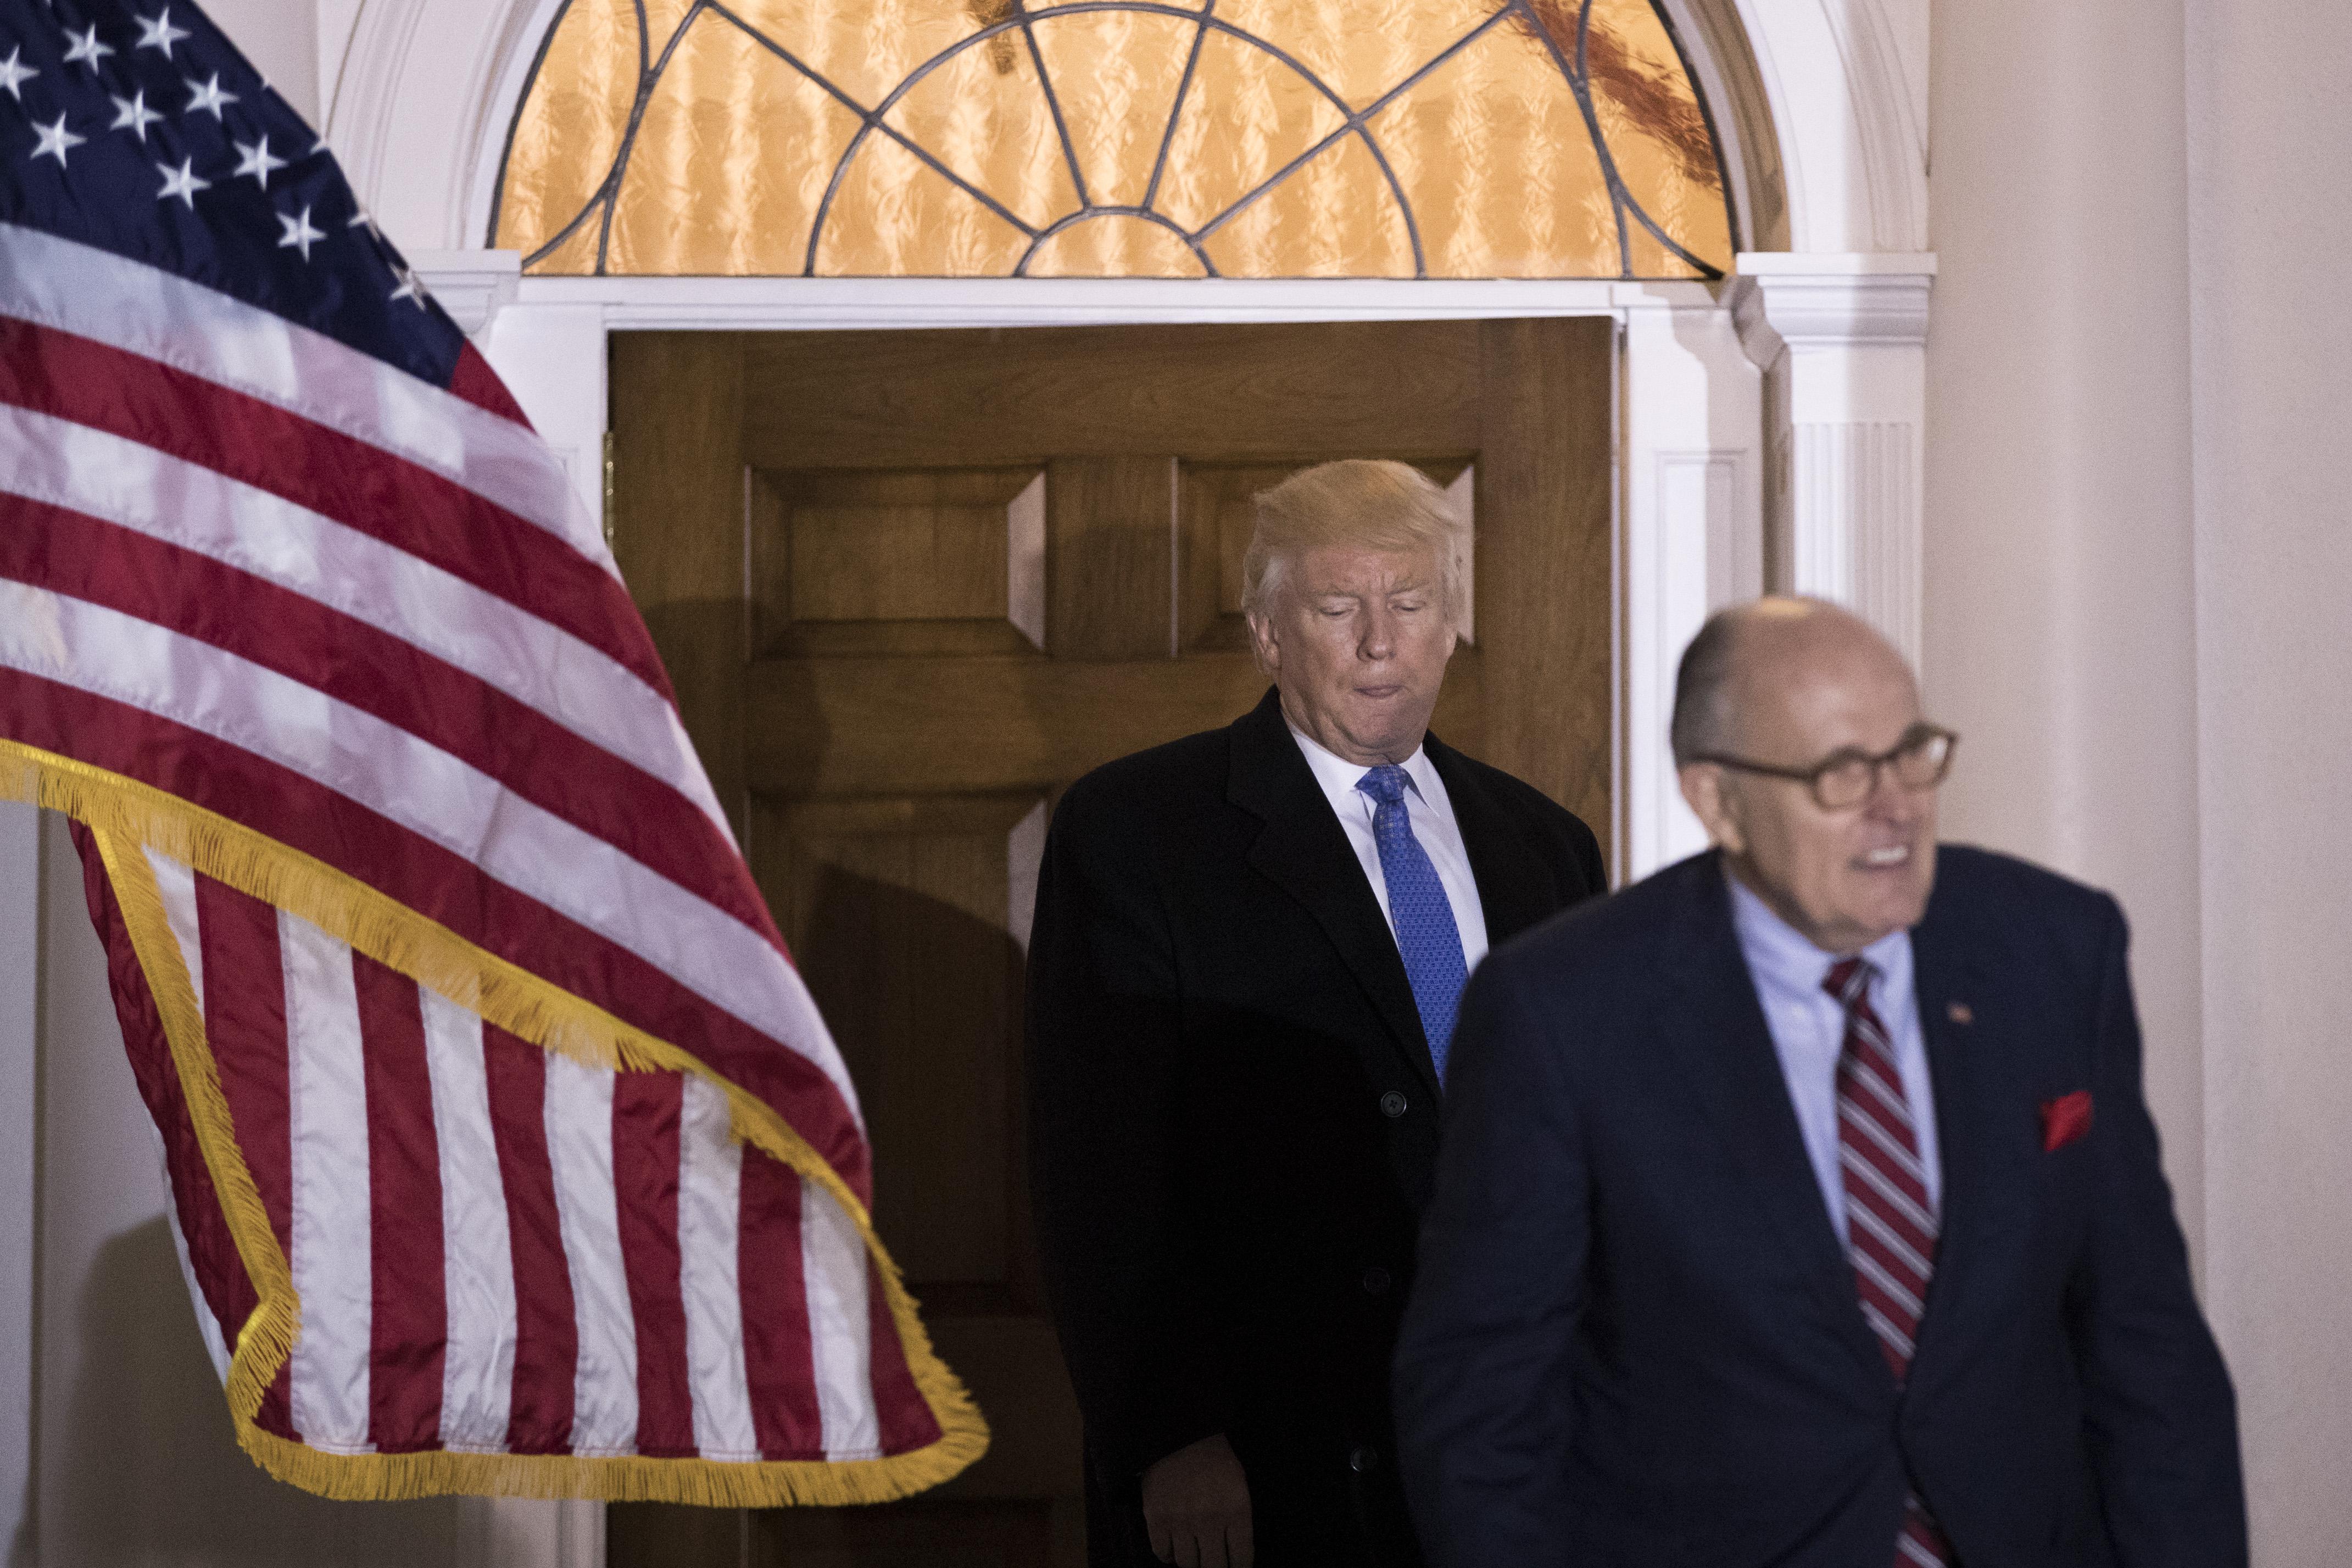 Donald Trump walking behind Rudy Giuliani.